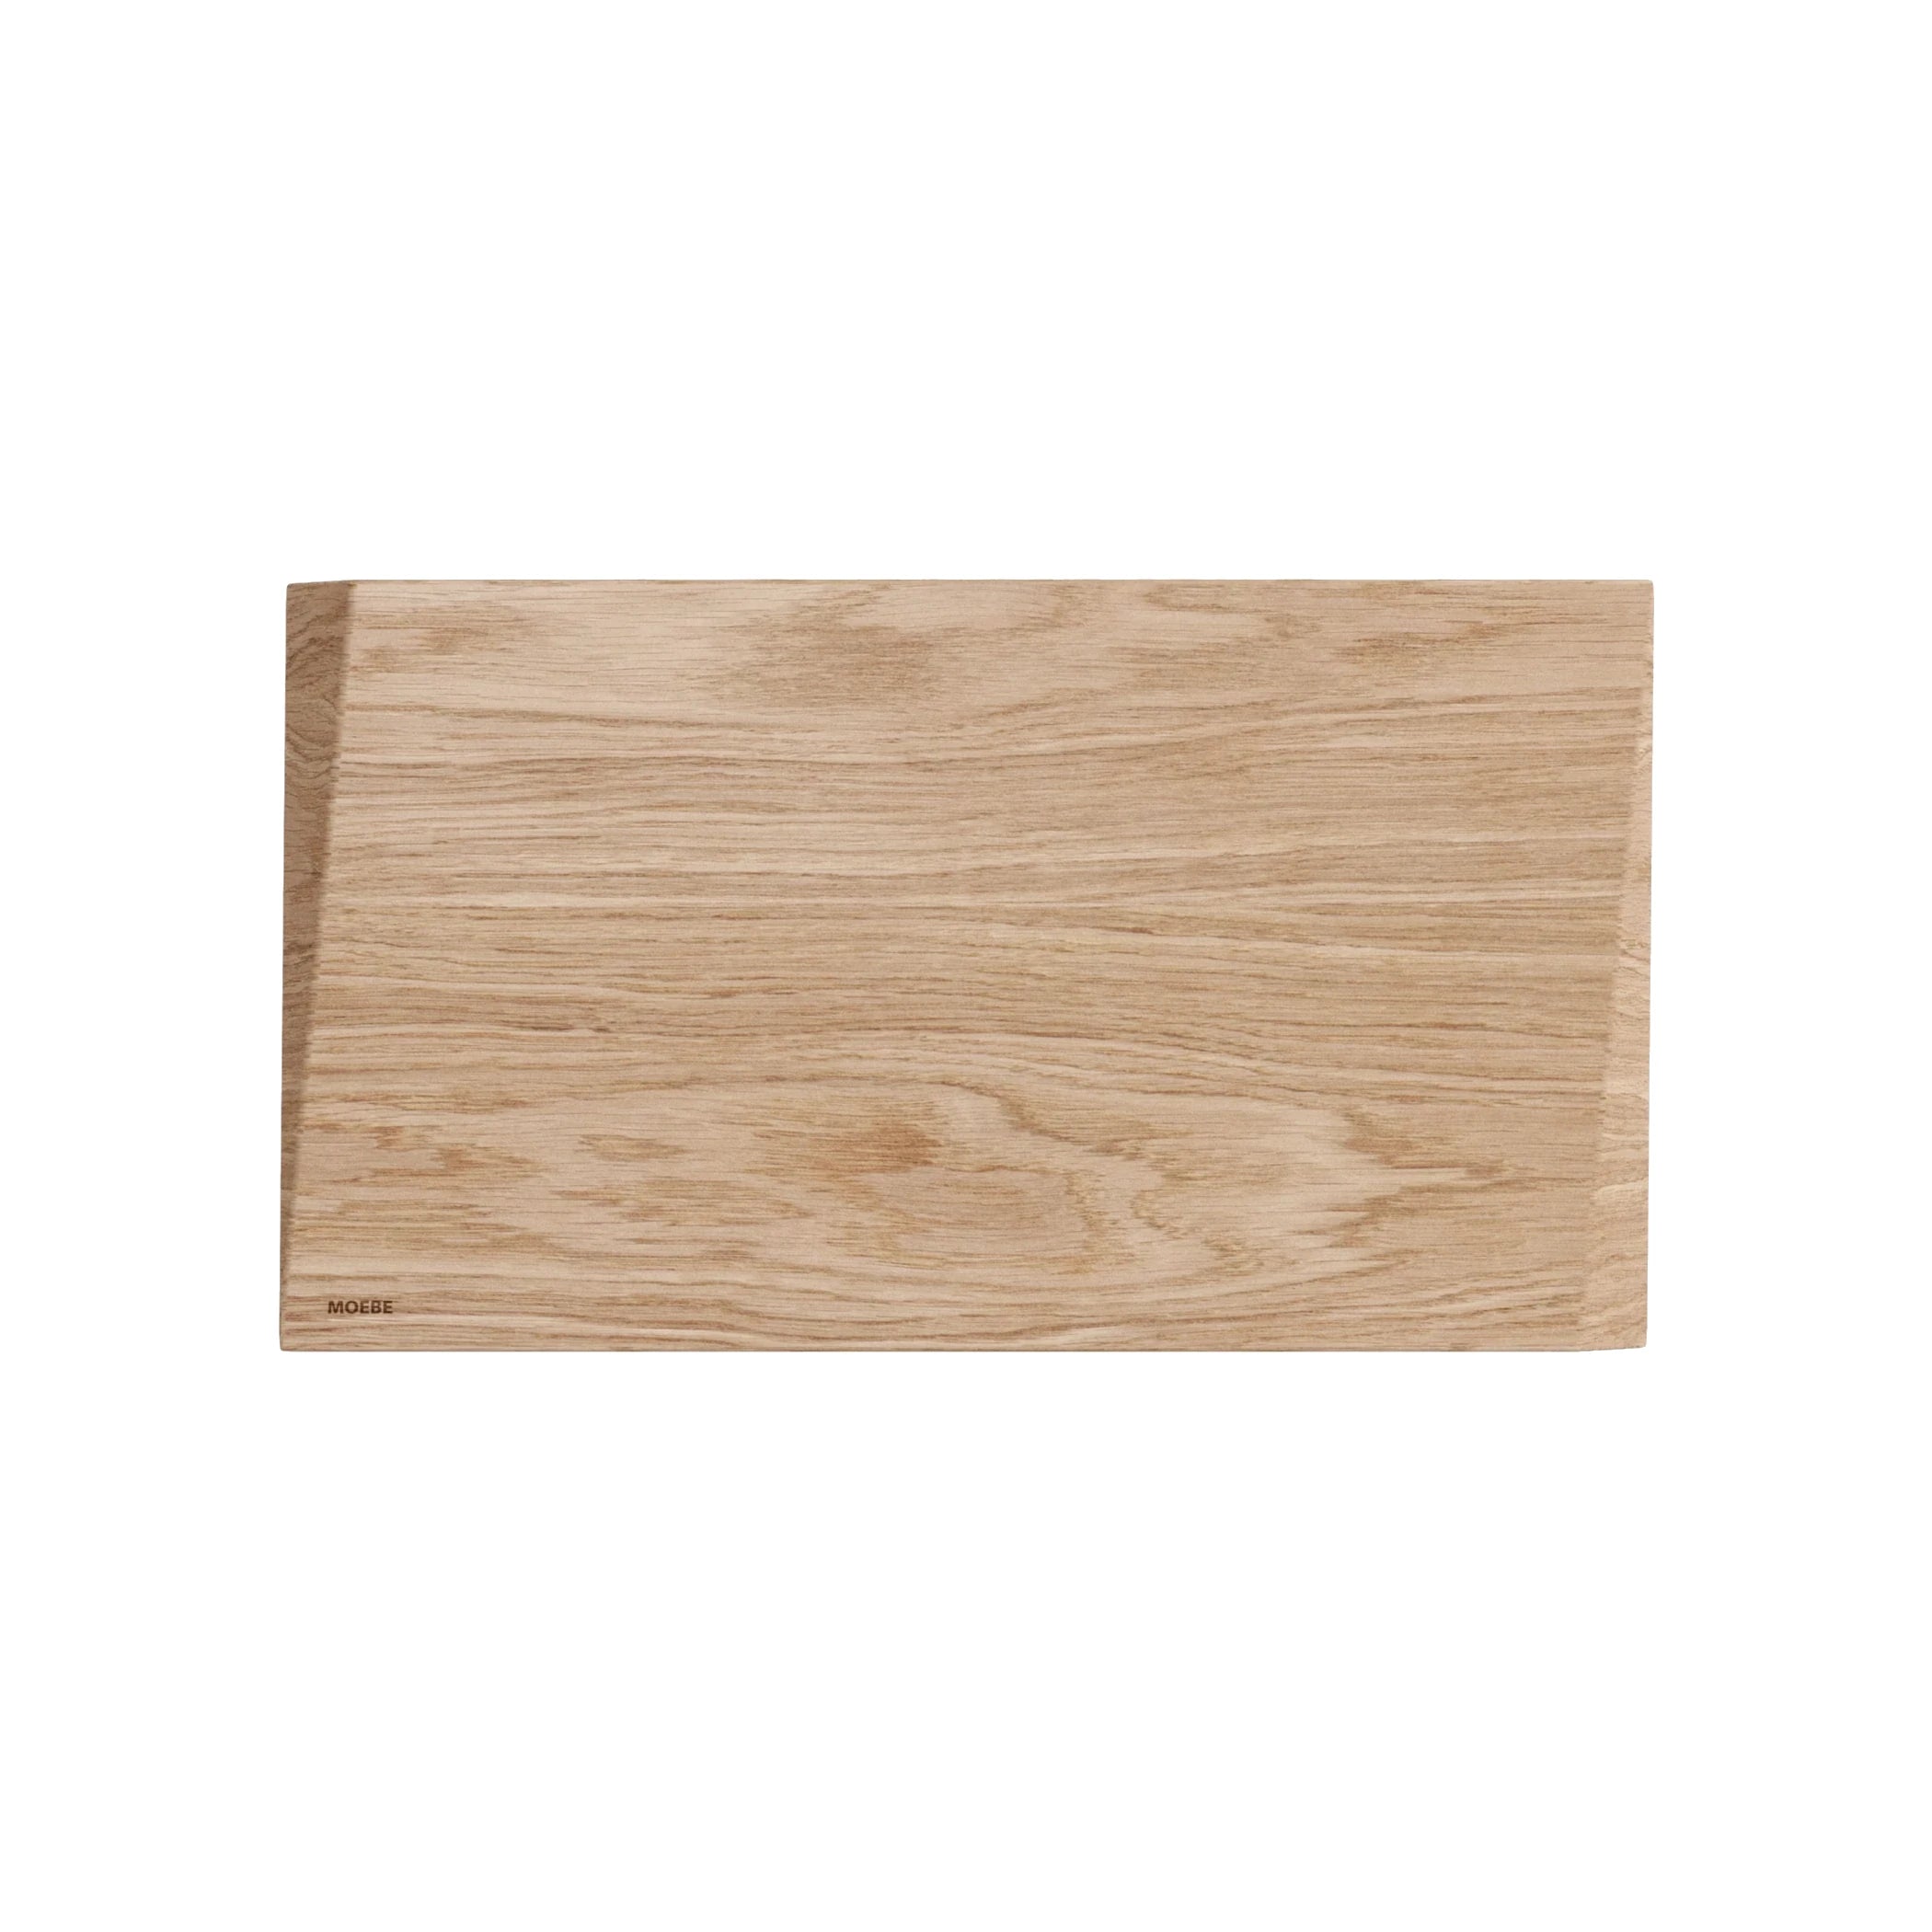 Small Cutting Board | Oak | By Moebe - Lifestory